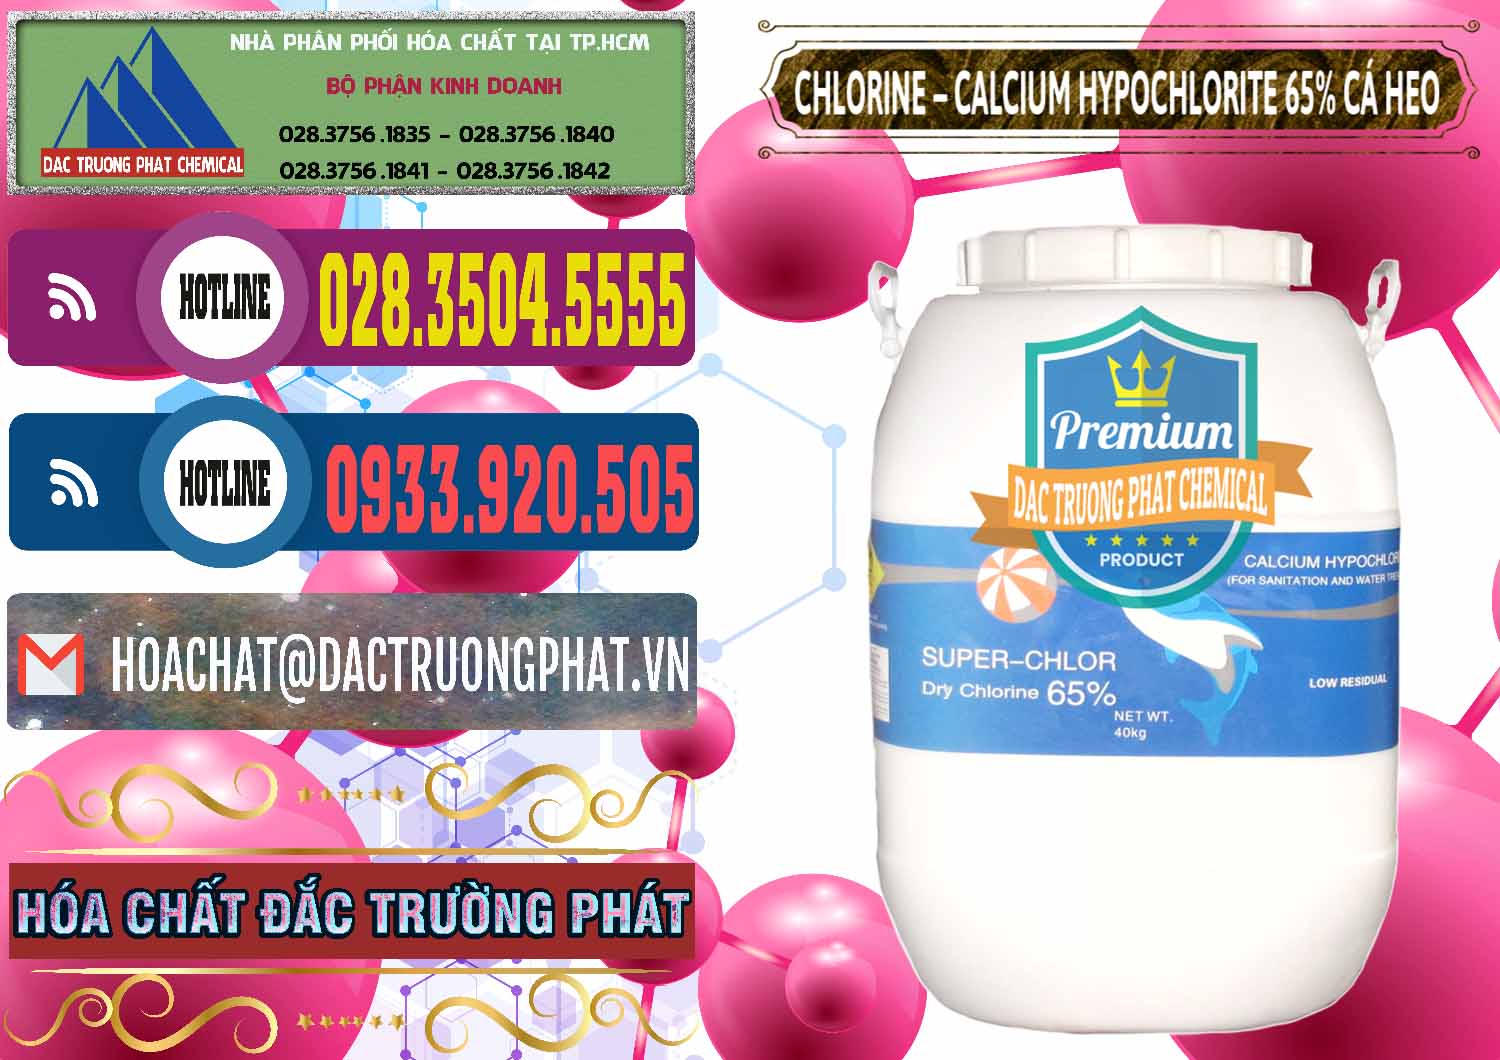 Chuyên phân phối và bán Clorin - Chlorine Cá Heo 65% Trung Quốc China - 0053 - Cung cấp & phân phối hóa chất tại TP.HCM - muabanhoachat.com.vn